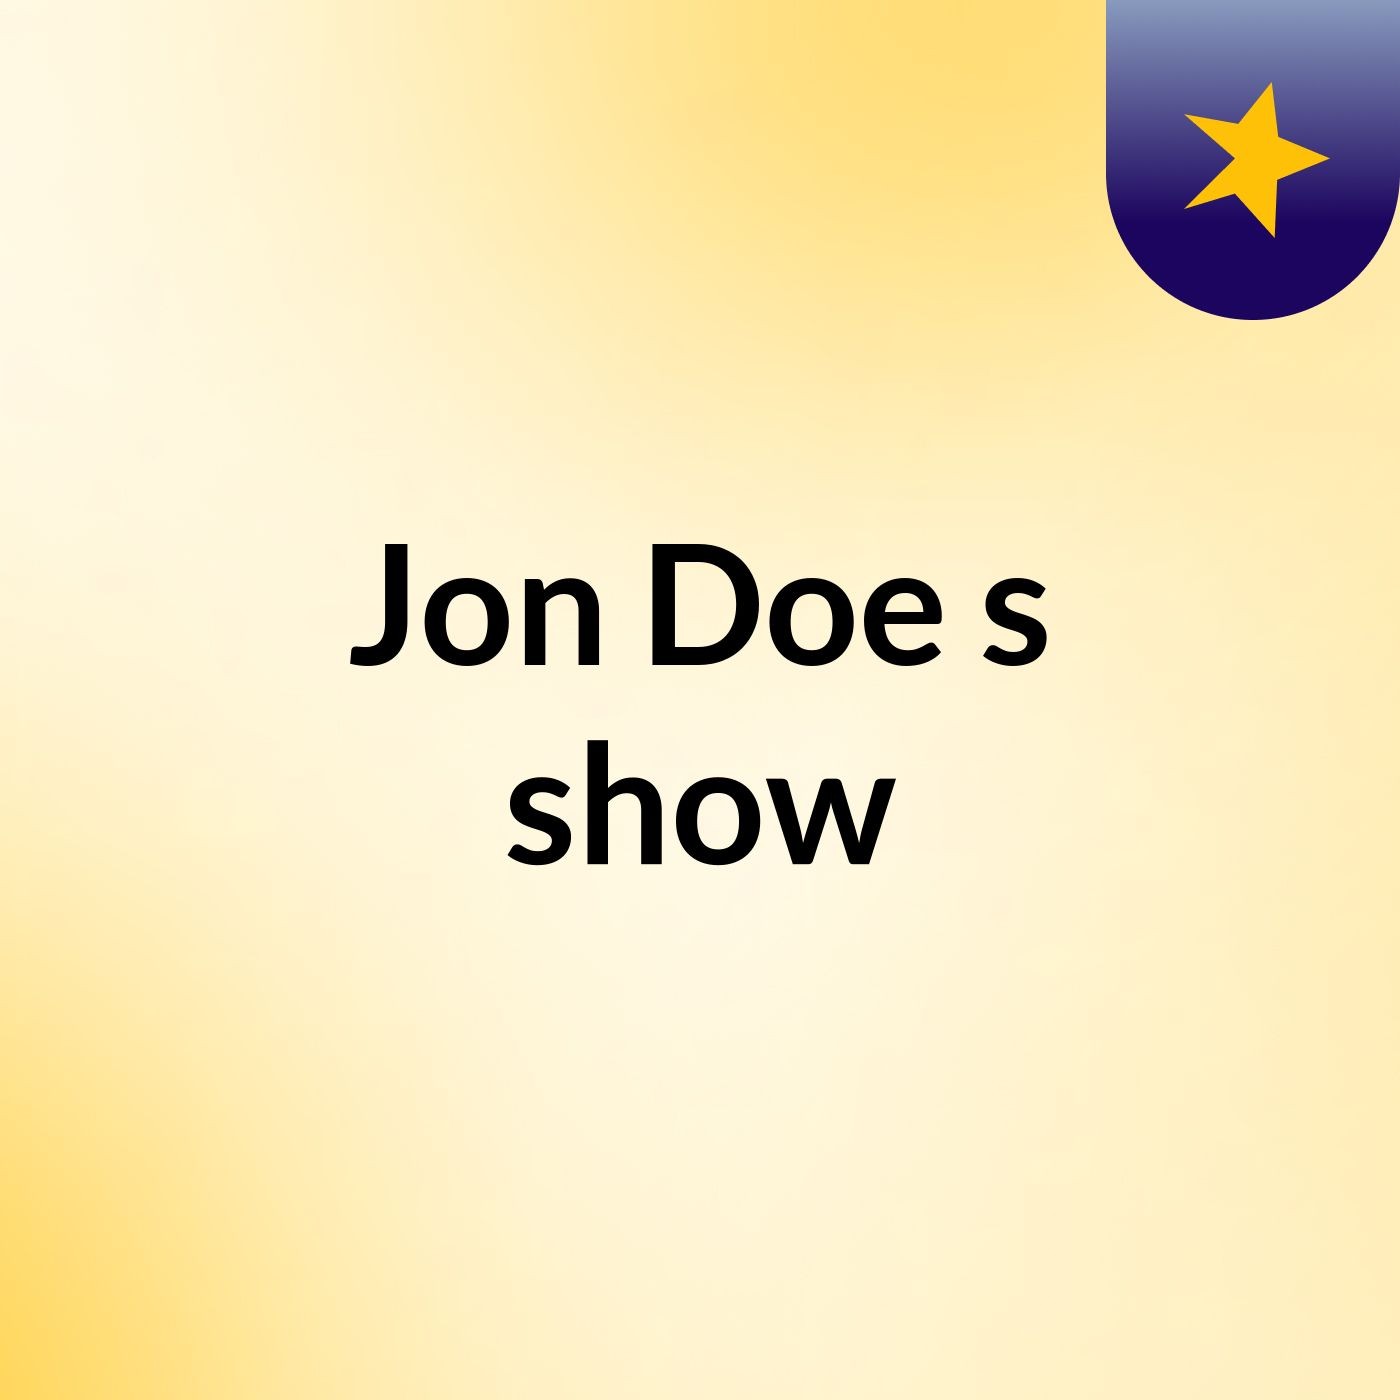 Jon Doe's show